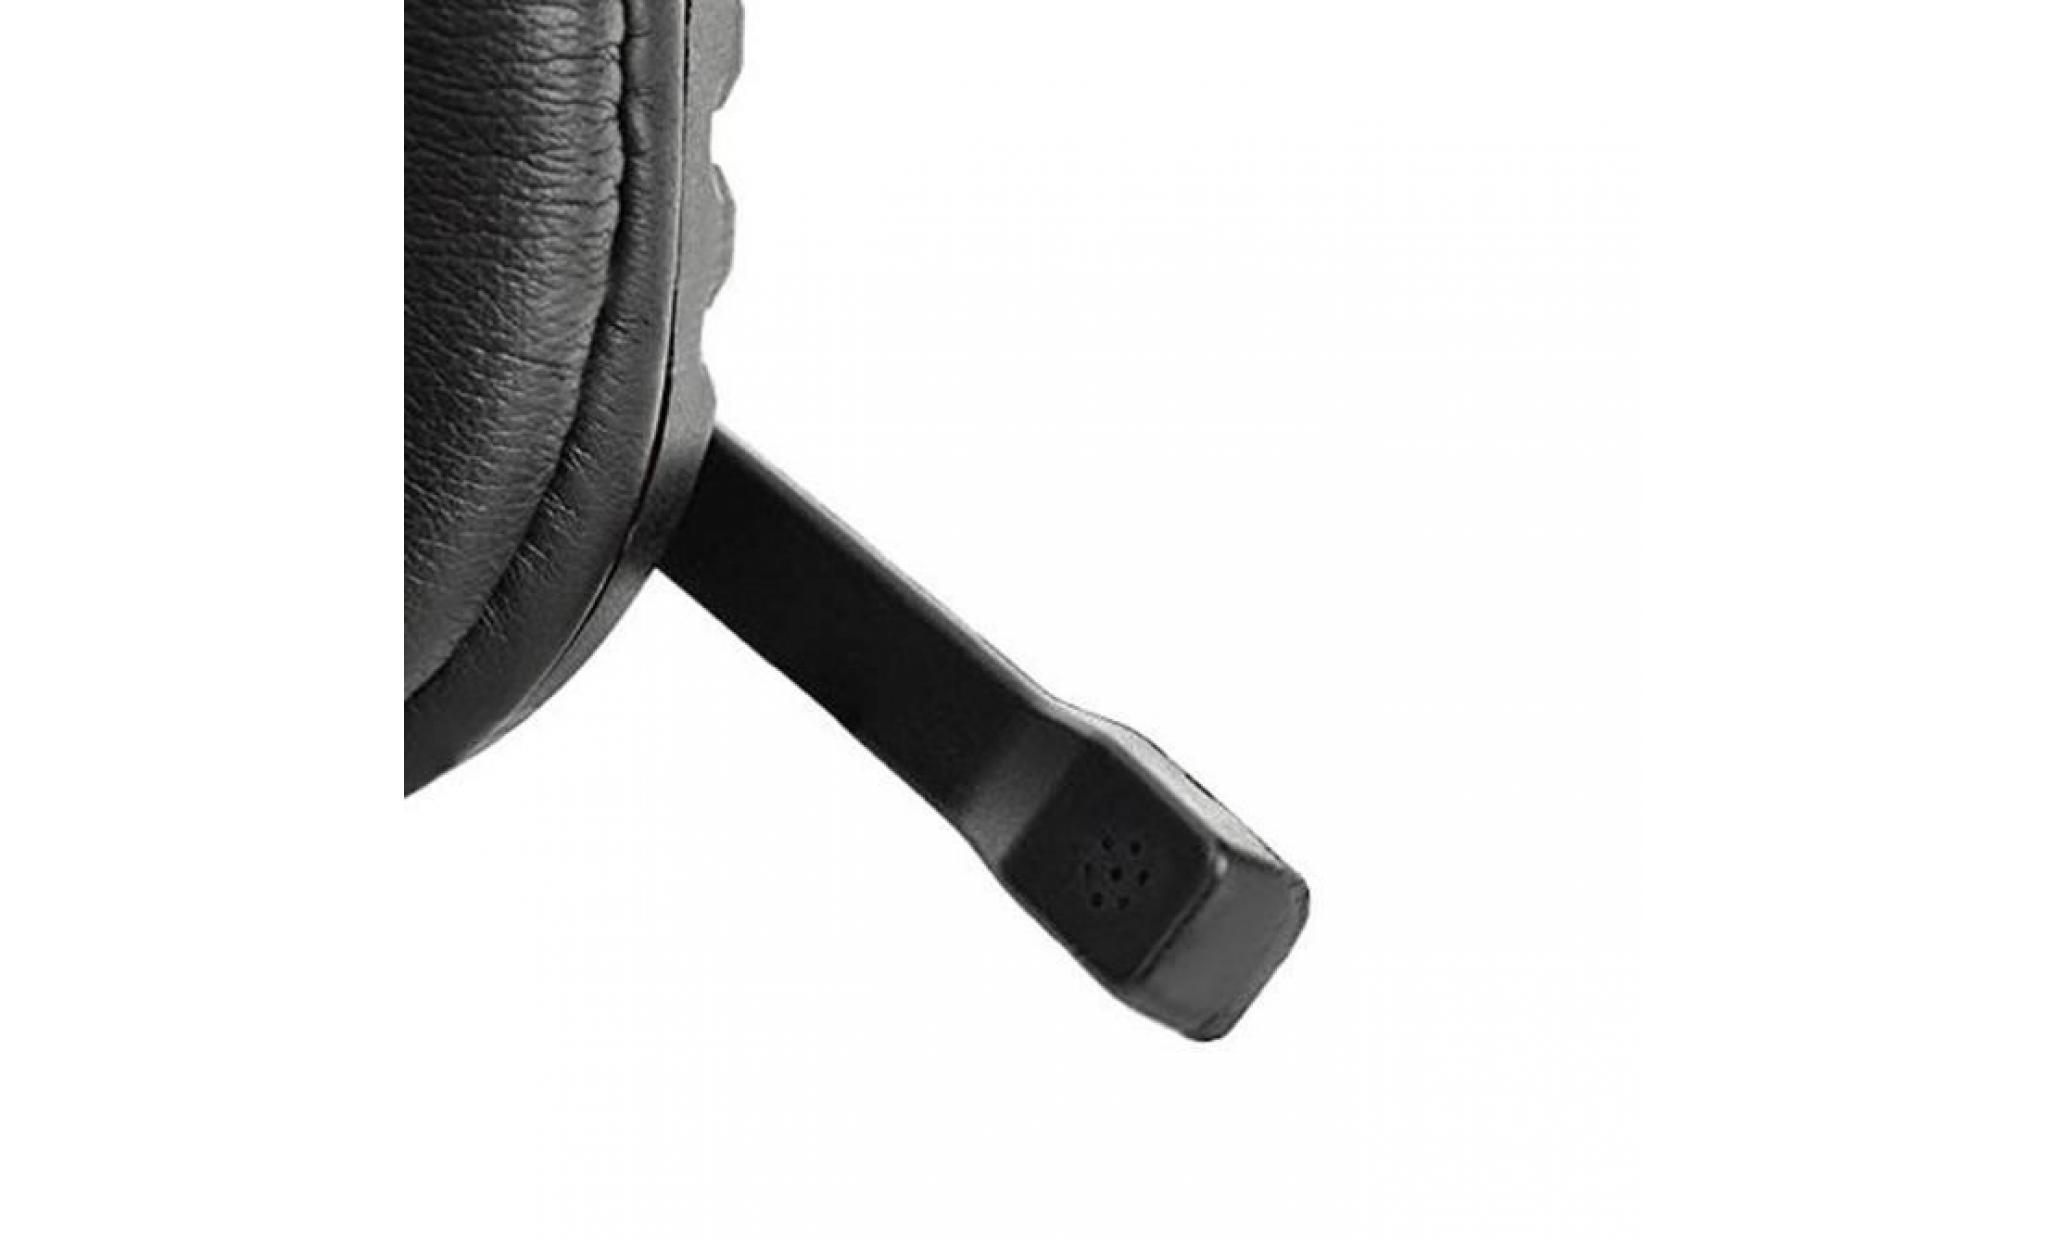 new gaming headset commande vocale filaire hi fi qualité sonore pour ps4 noir + rouge casque de musique 169 pas cher